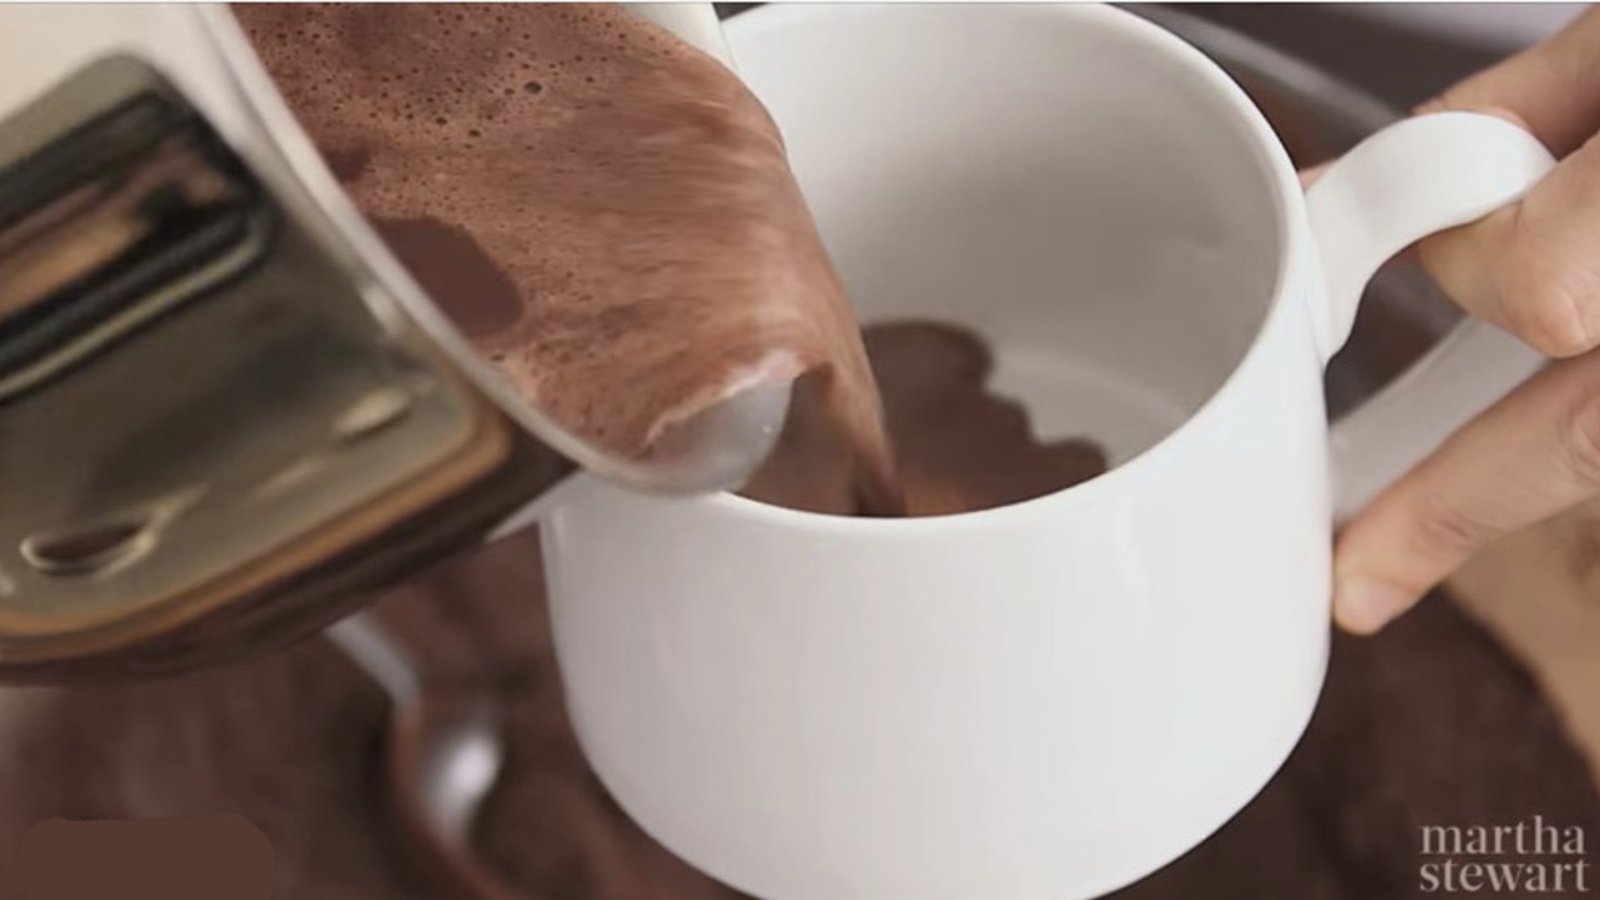 Plus jamais vous ne voudrez de chocolat chaud en sachet! Voici la recette la plus onctueuse à savourer! 